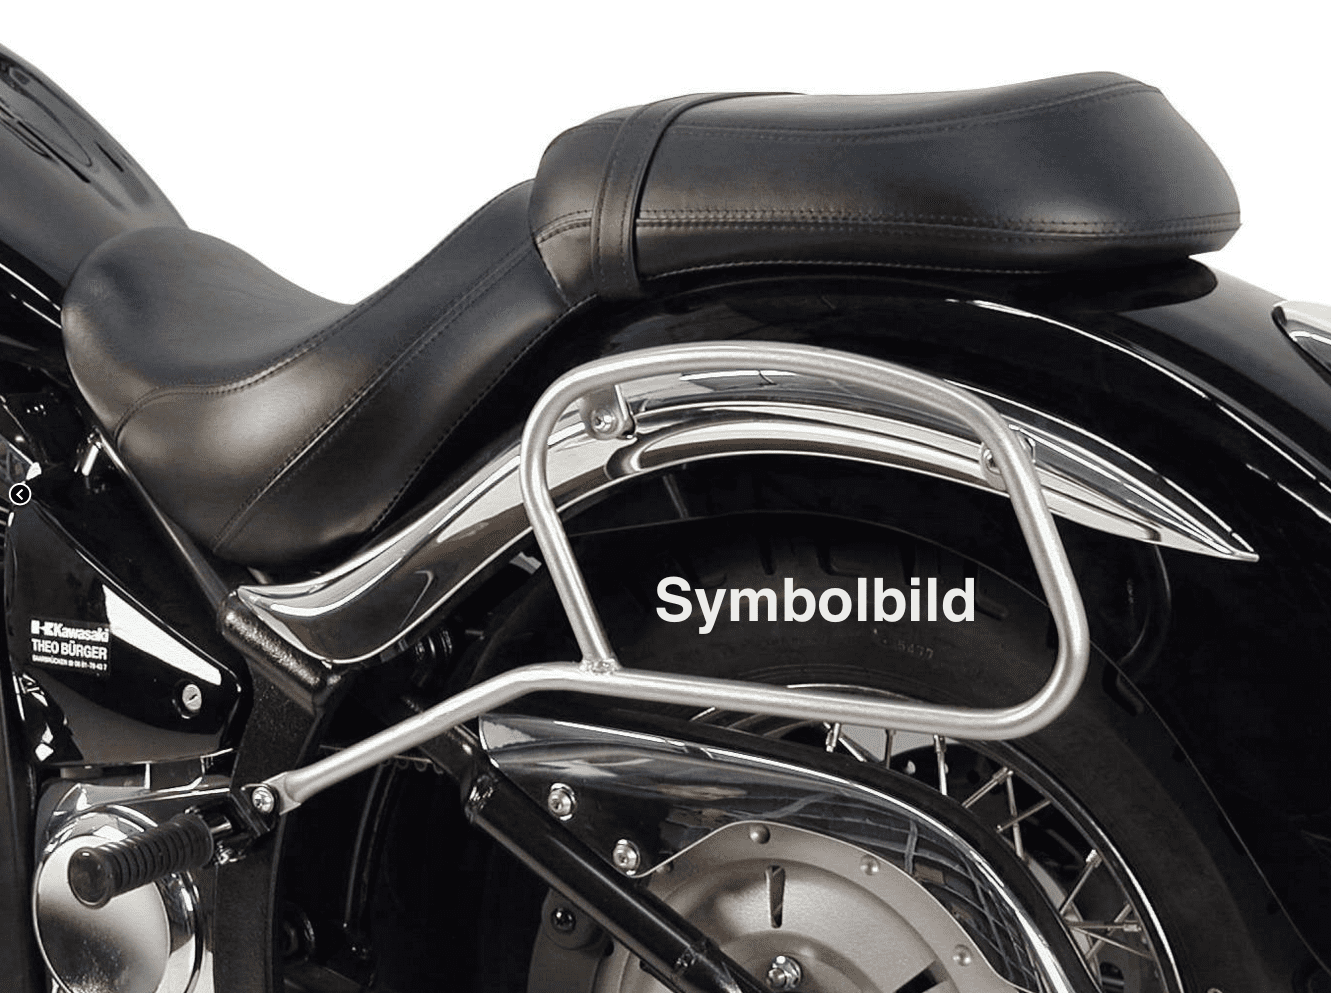 Leather bag holder tube-type - black for Kawasaki VN 900 Classic / 900 Custom / Vulcan